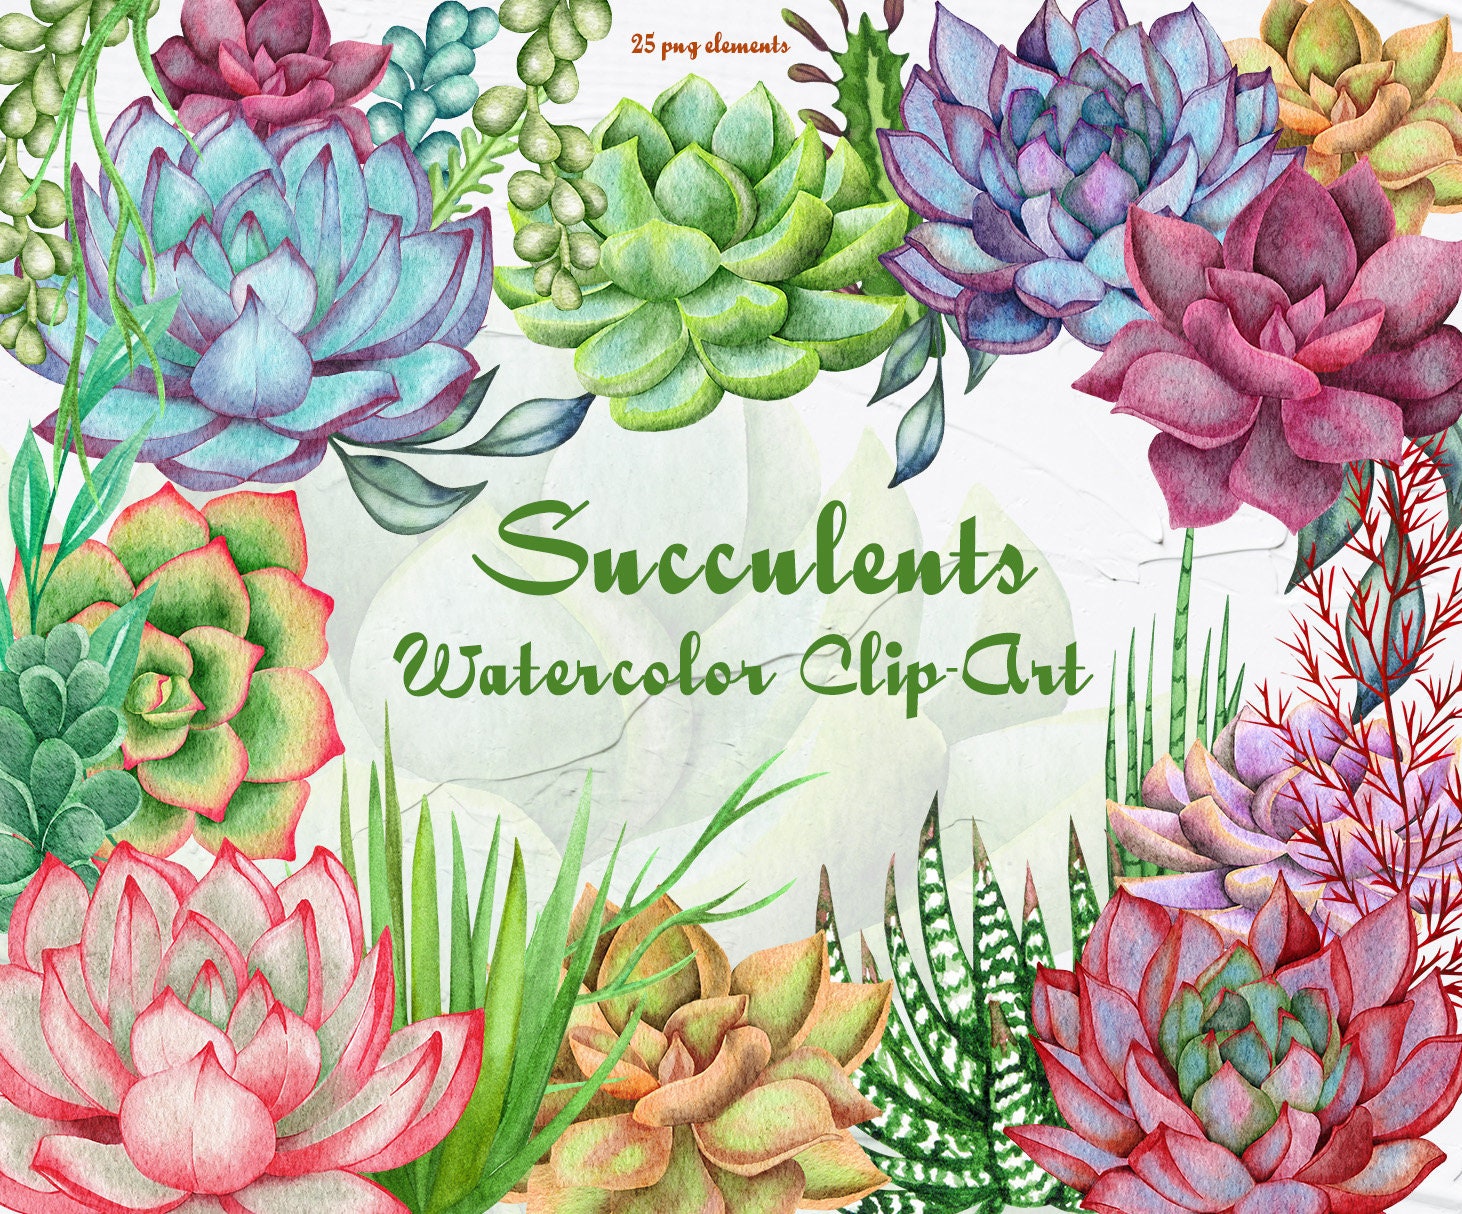 Succulent Watercolor Clipart. Houseplants Watercolor Clip Art. - Etsy